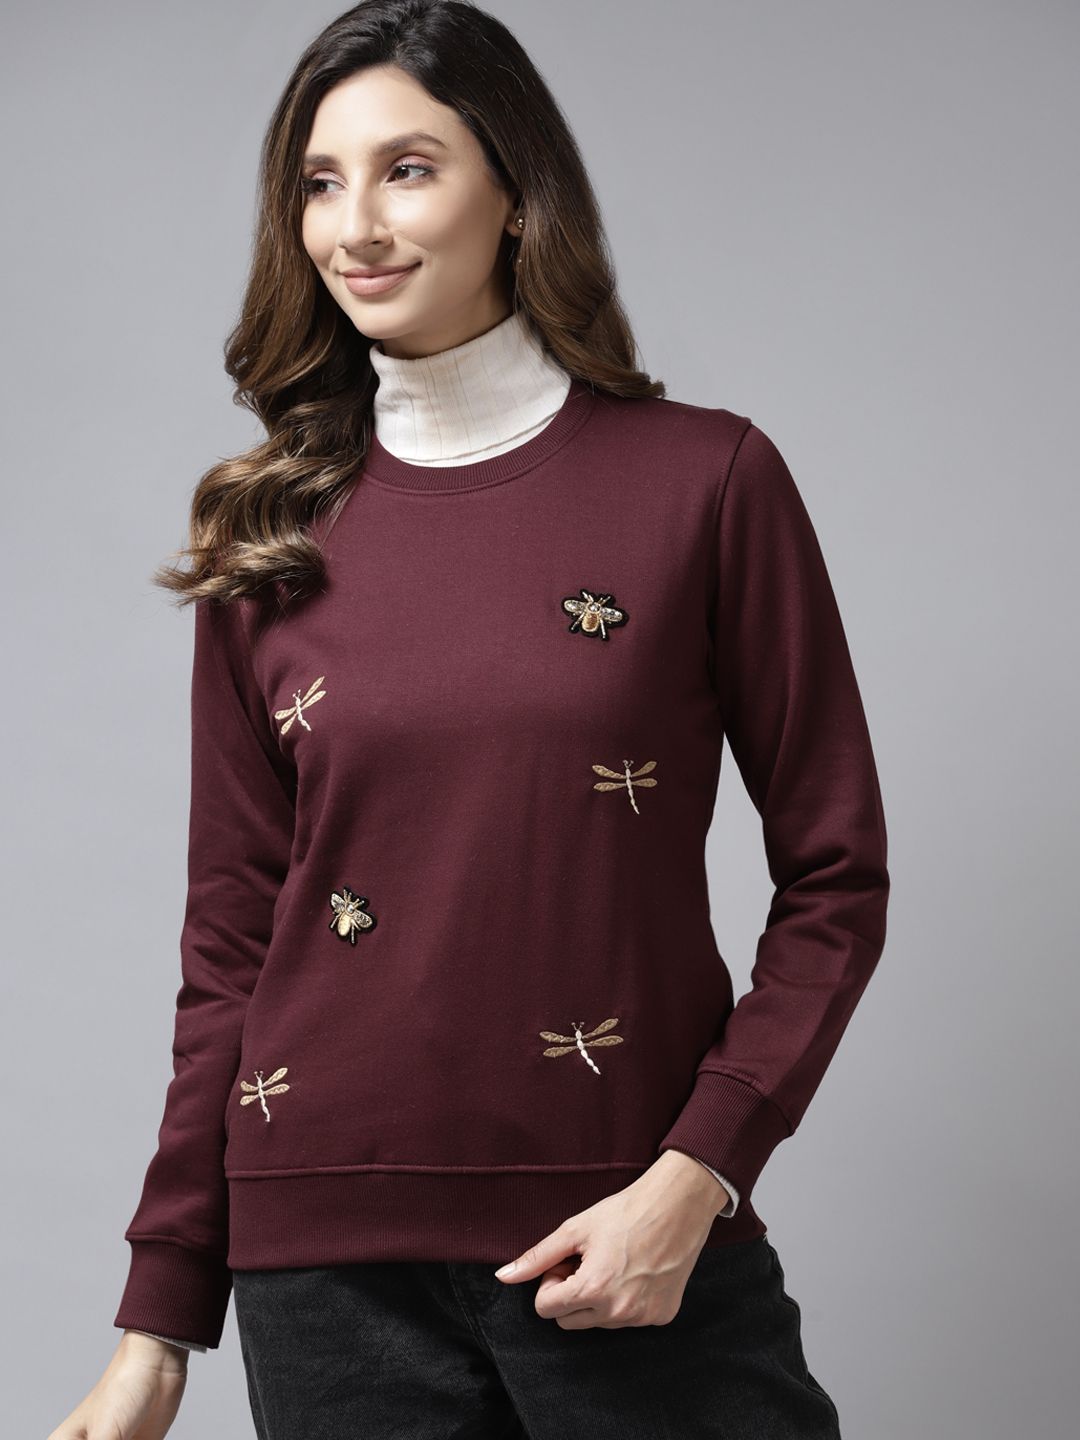 Cayman Women Maroon Solid Applique Sweatshirt Price in India